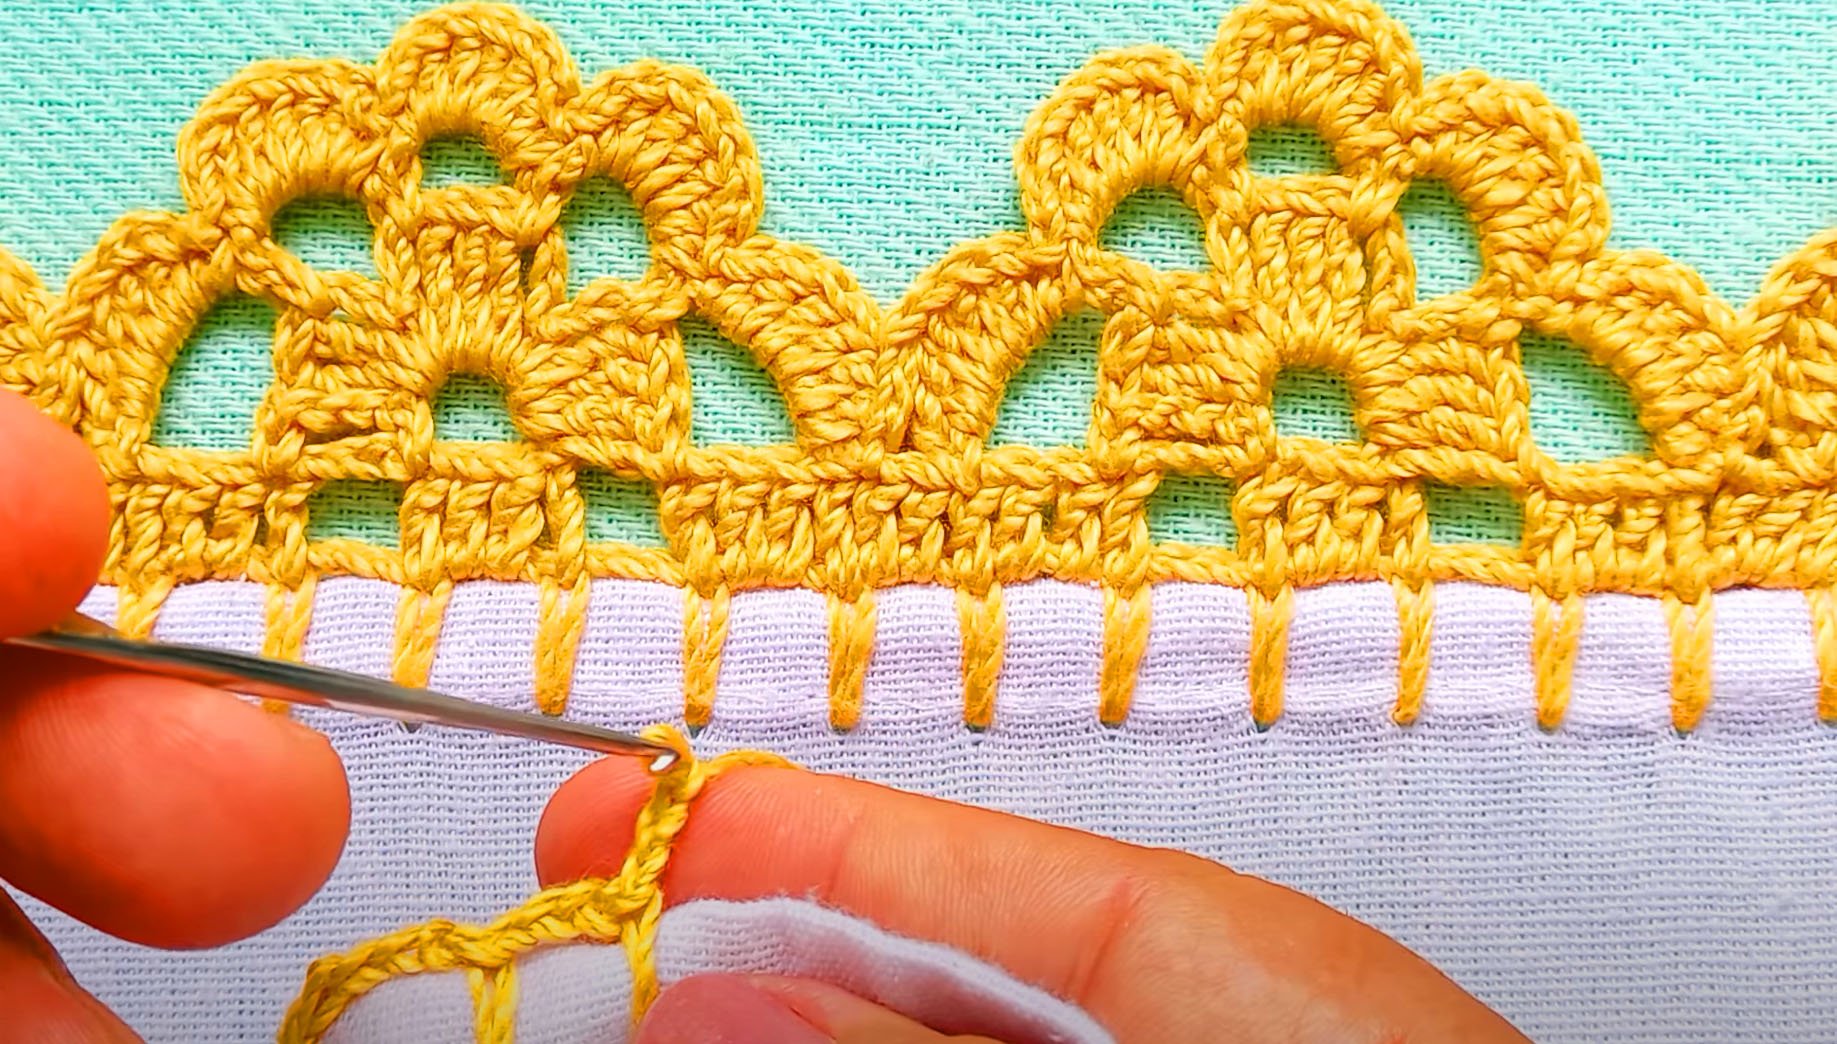 Barrado carreira única de flor de ouro no crochê muito lindo e facílimo para aprender